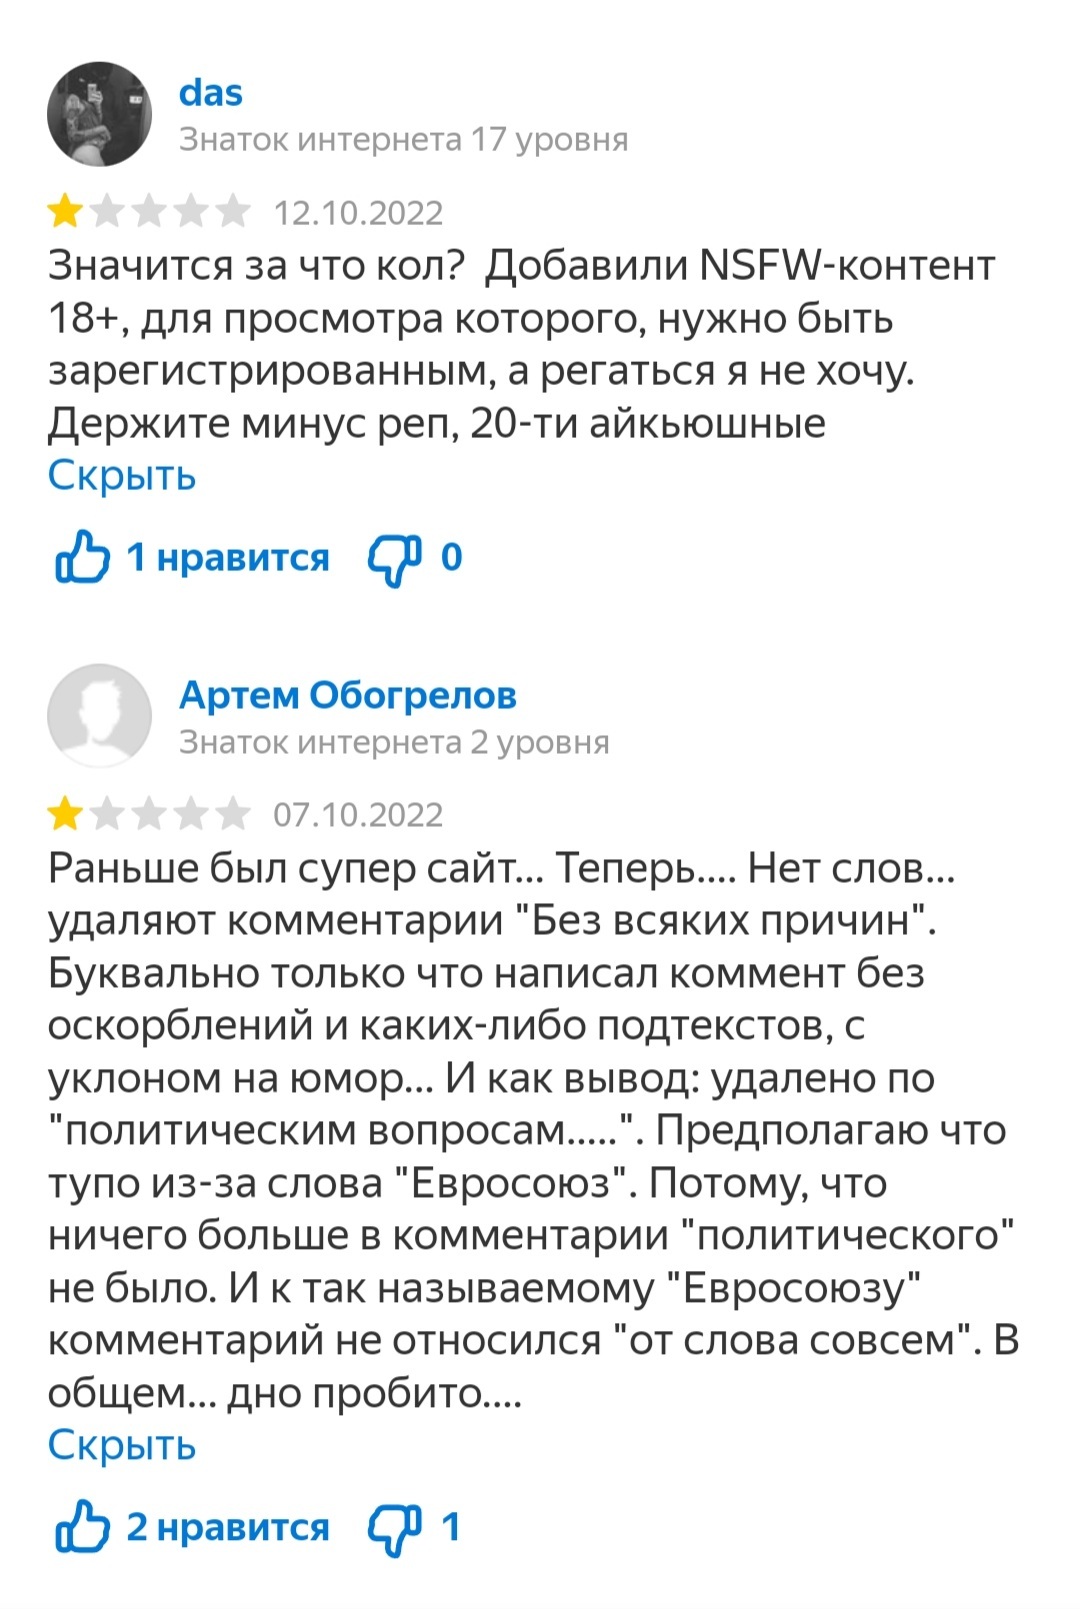 What do we have here? - Grade, Yandex., Peekaboo, Review, Amazing, Longpost